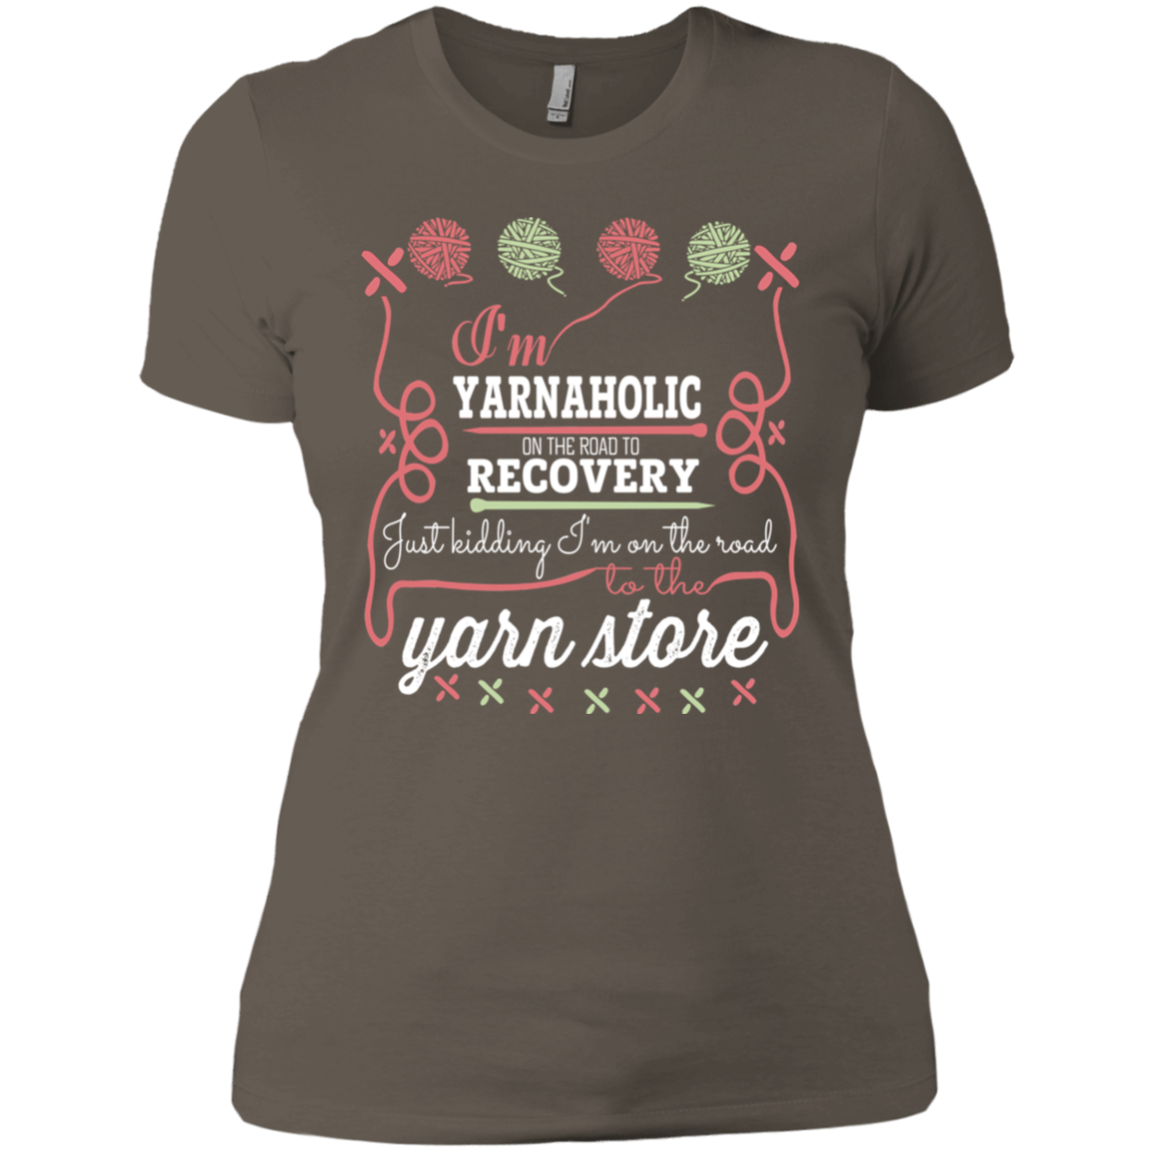 I'm Yarnaholic Ladies T-Shirt